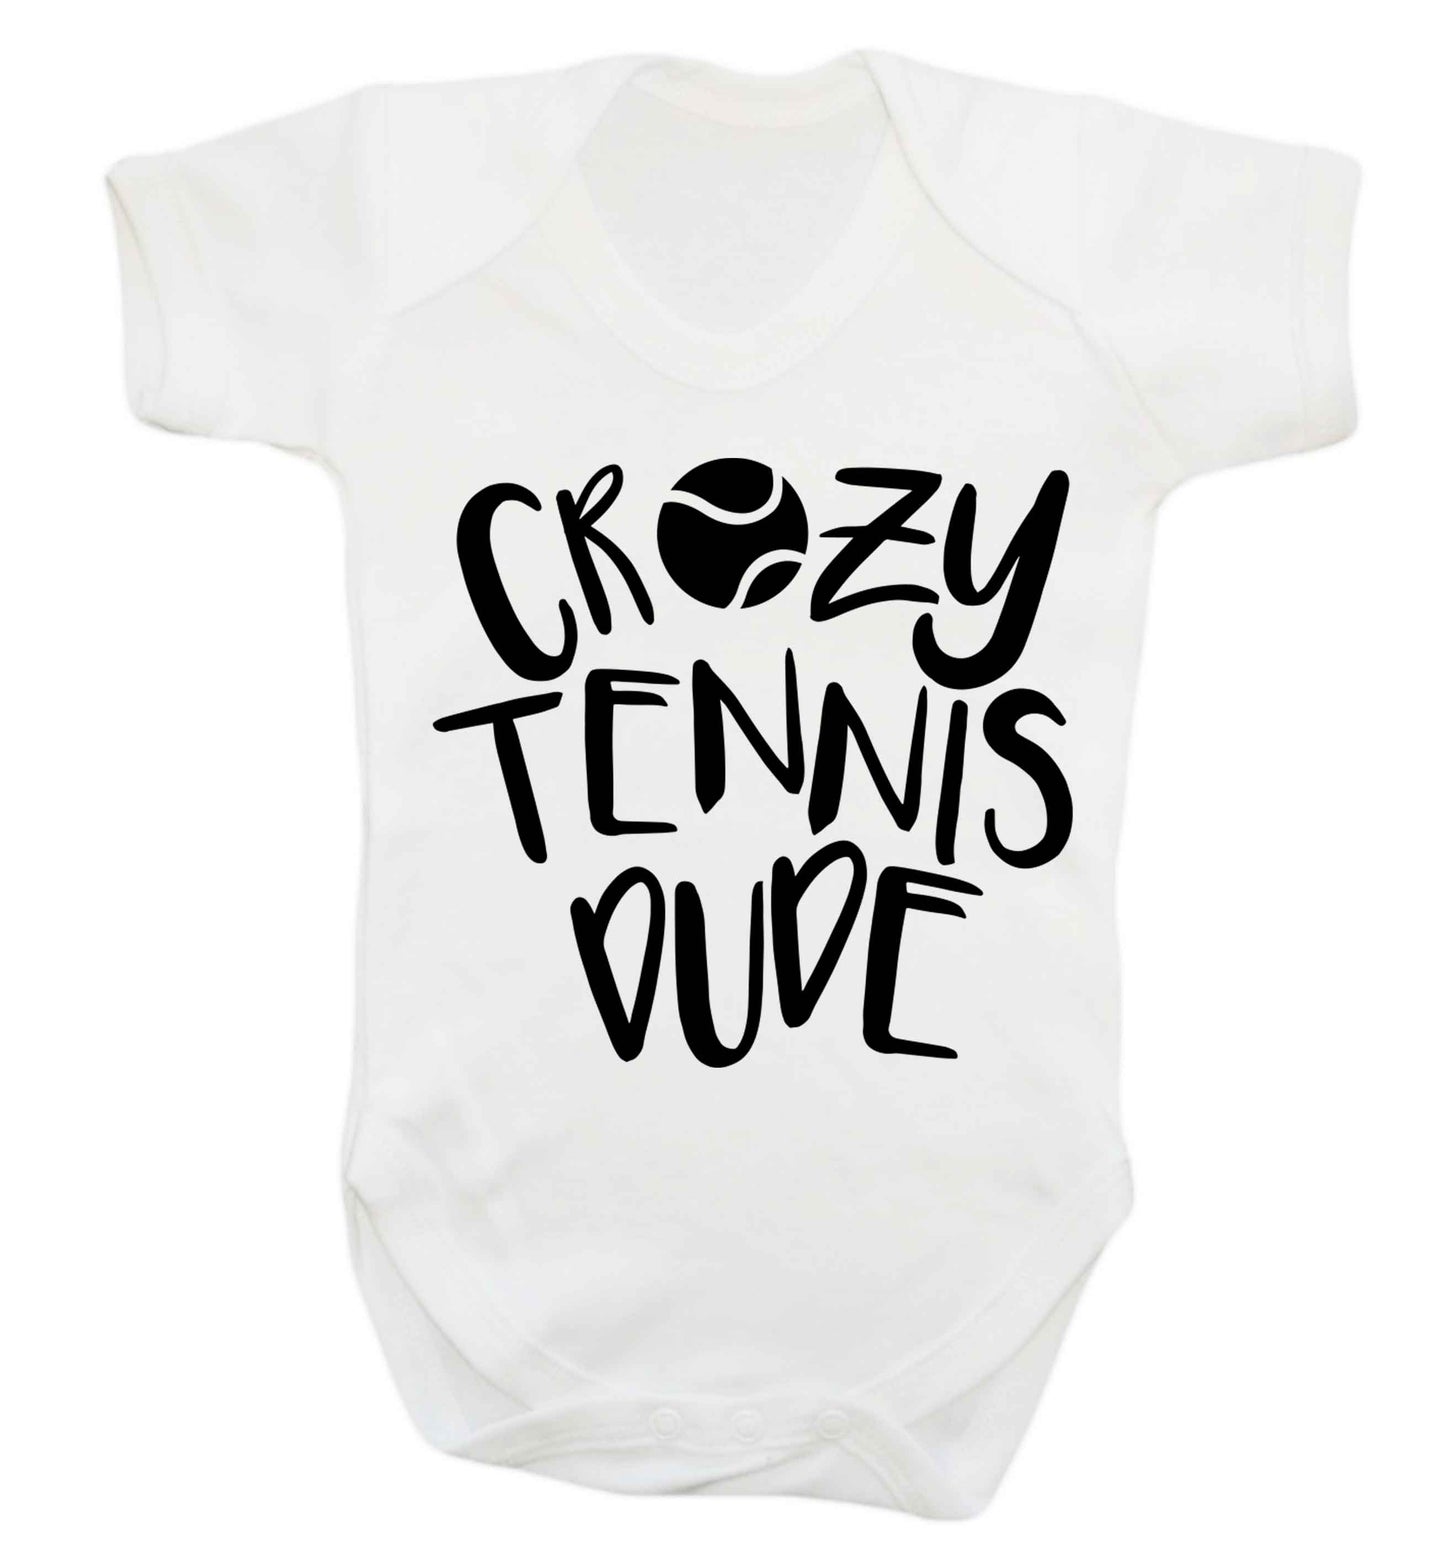 Crazy tennis dude Baby Vest white 18-24 months